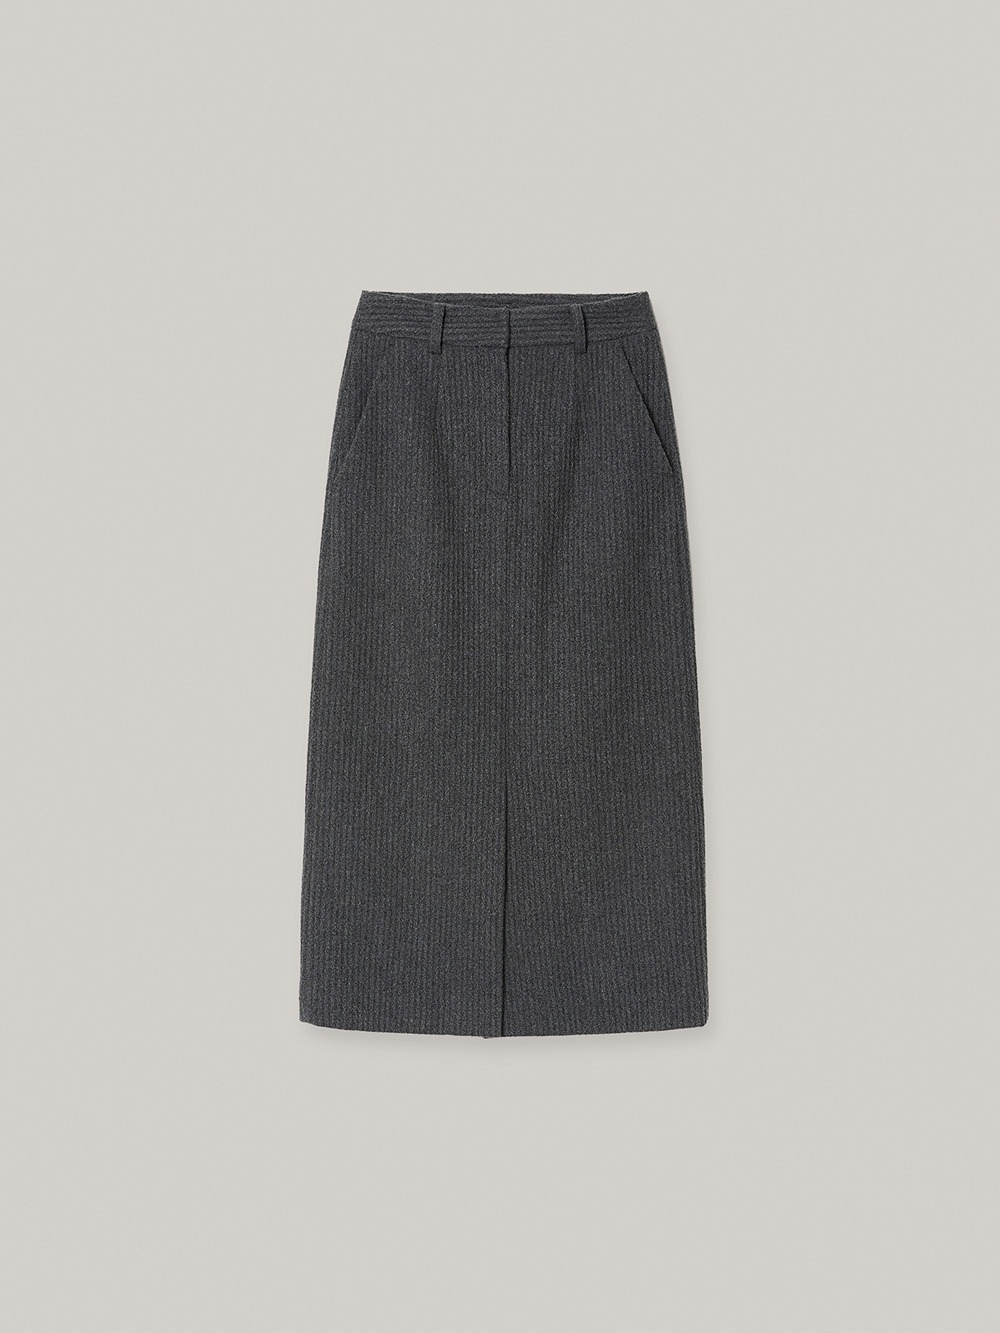 Wavy Skirt (gray)